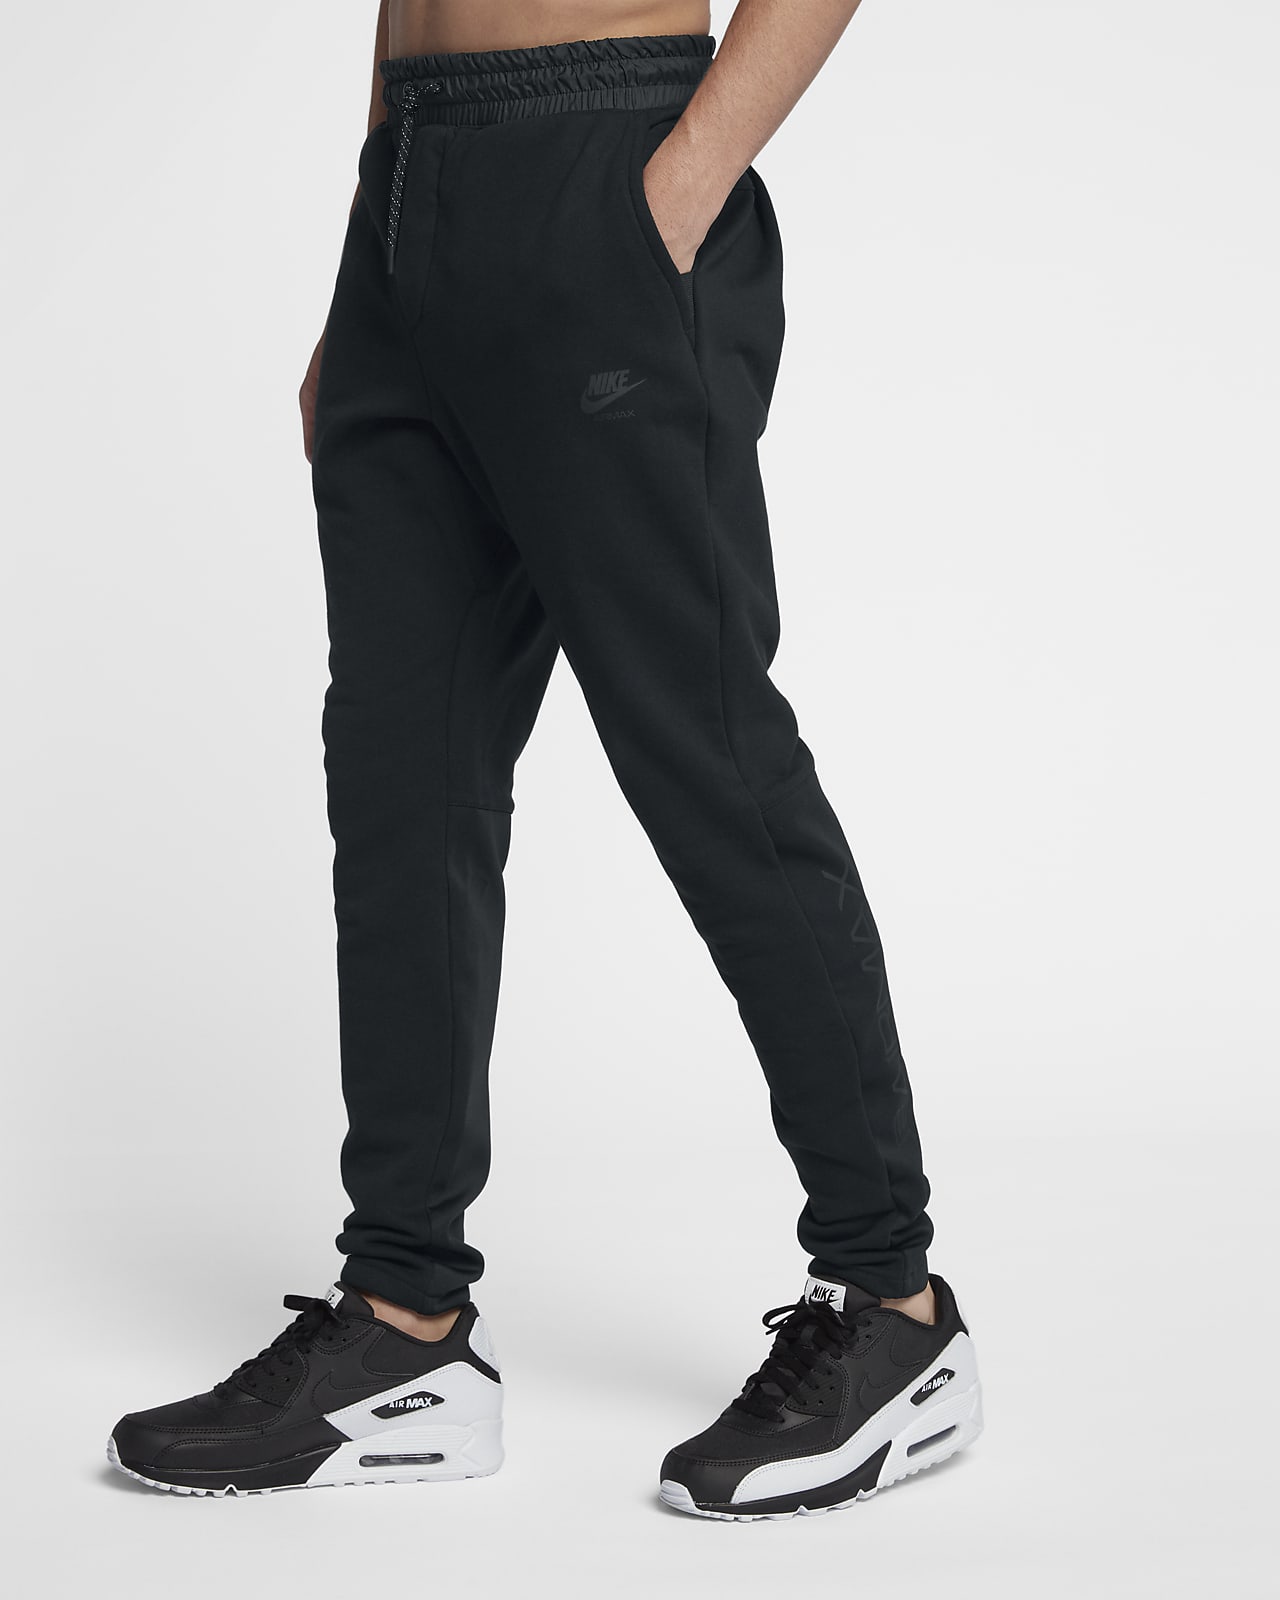 Nike Sportswear Air Max Men's Joggers 